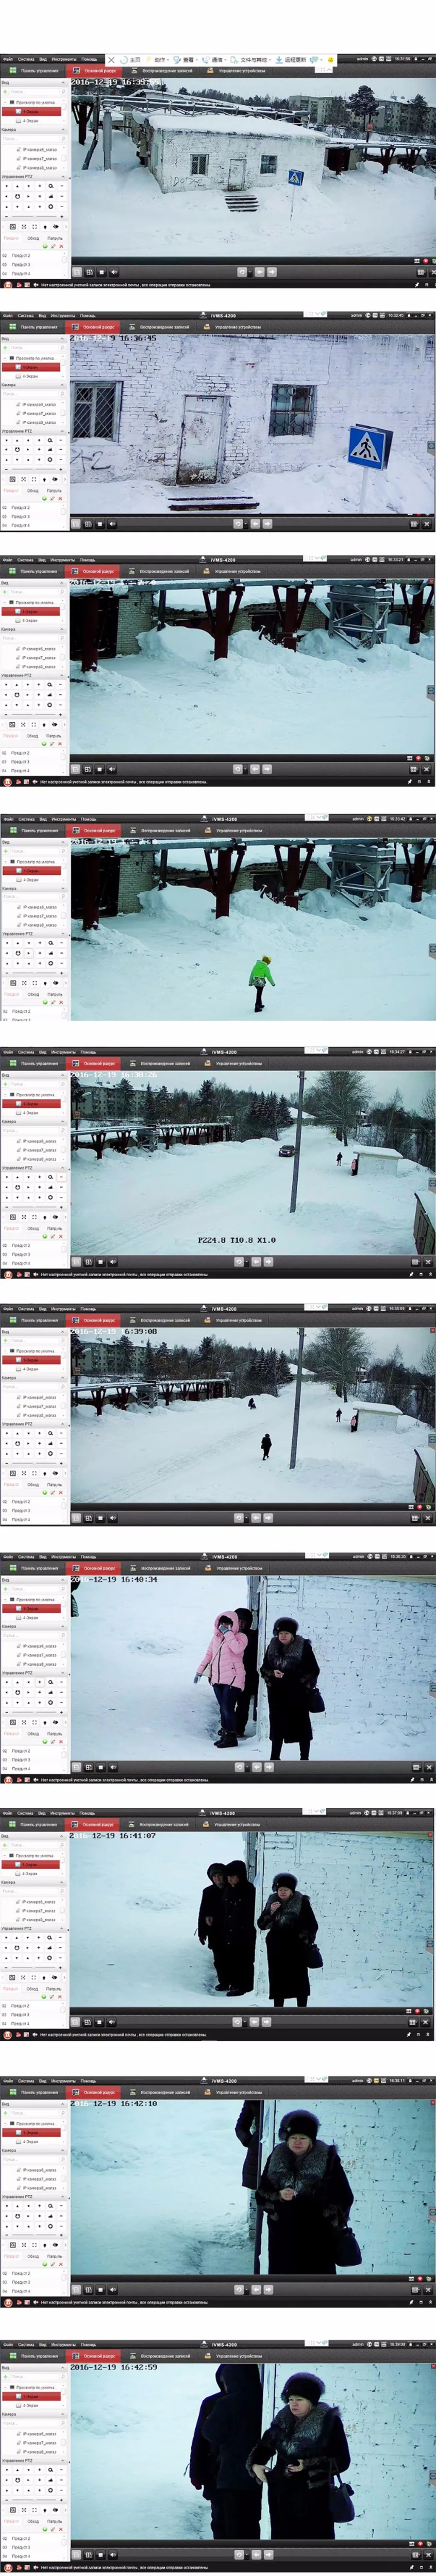 IMPORX 8CH система видеонаблюдения 1080 P Беспроводной NVR комплект Открытый ночного видения безопасности ip-камера видеонаблюдения Система